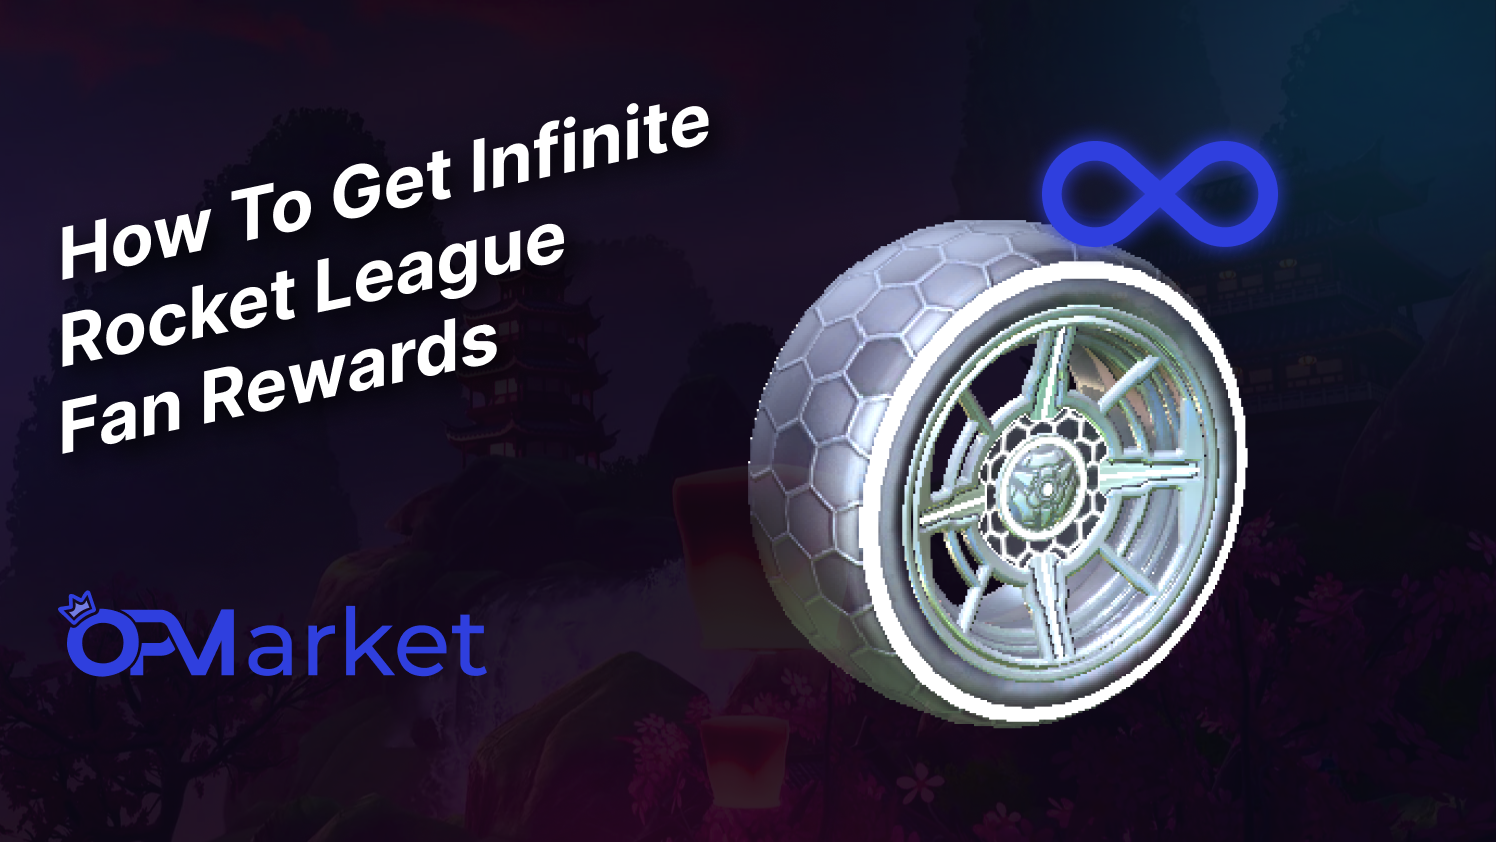 How To Get Infinite Rocket League Fan Rewards!